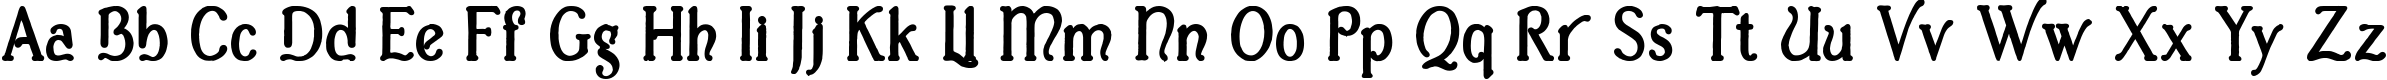 Пример написания английского алфавита шрифтом Casua_Bold